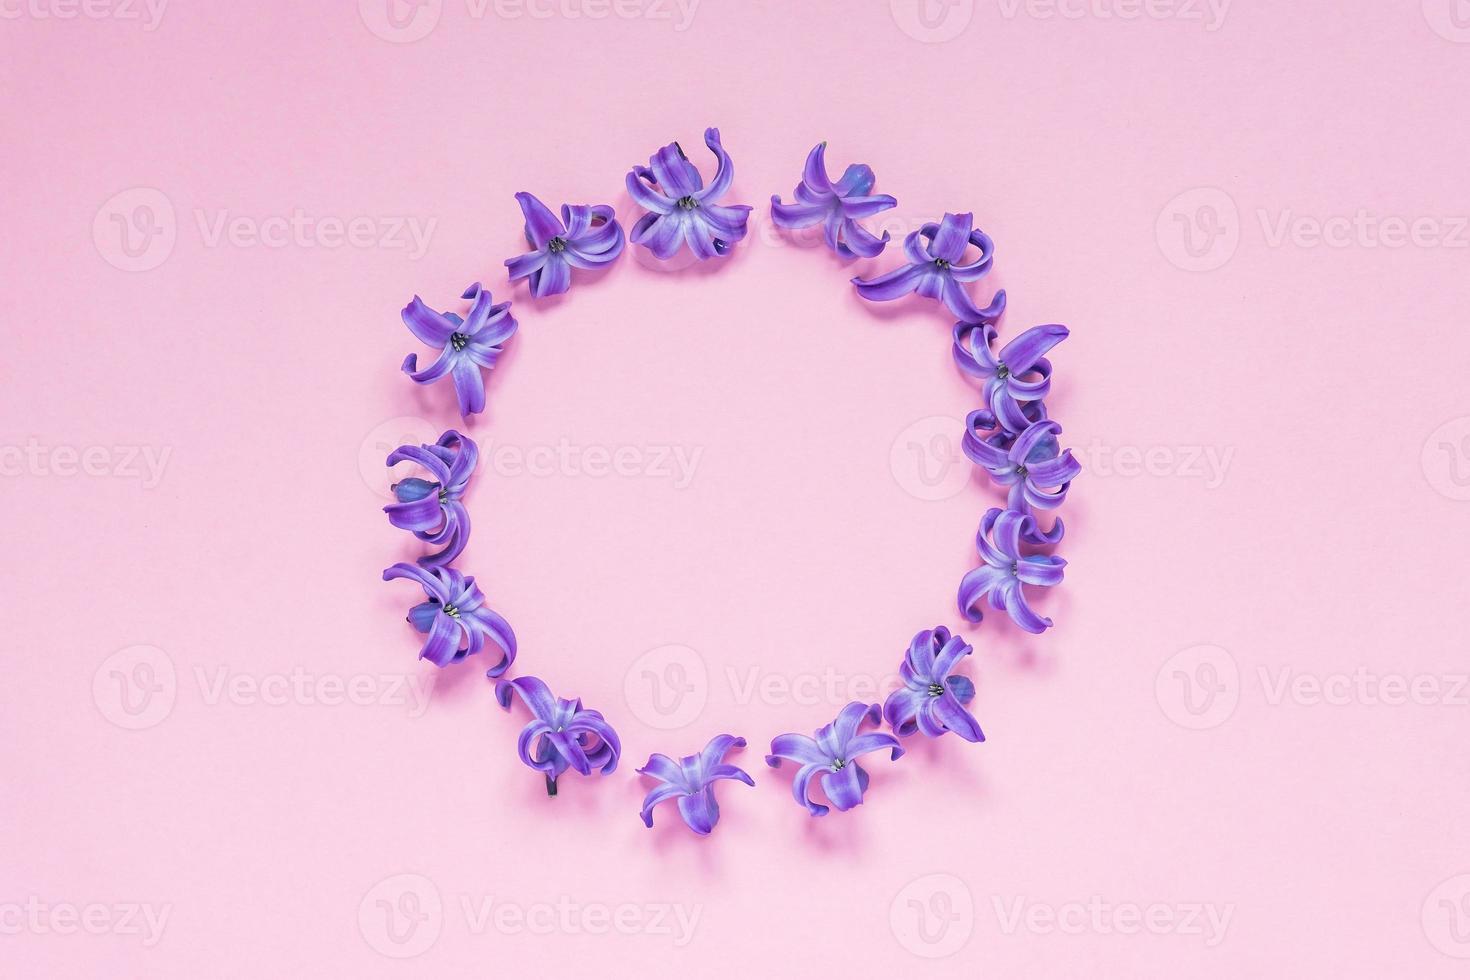 cadre rond de fleurs de jacinthe violet pastel sur fond rose dégradé. couronne florale. mise en page pour les vacances salutation de la fête des mères, anniversaire, mariage ou autre événement heureux photo